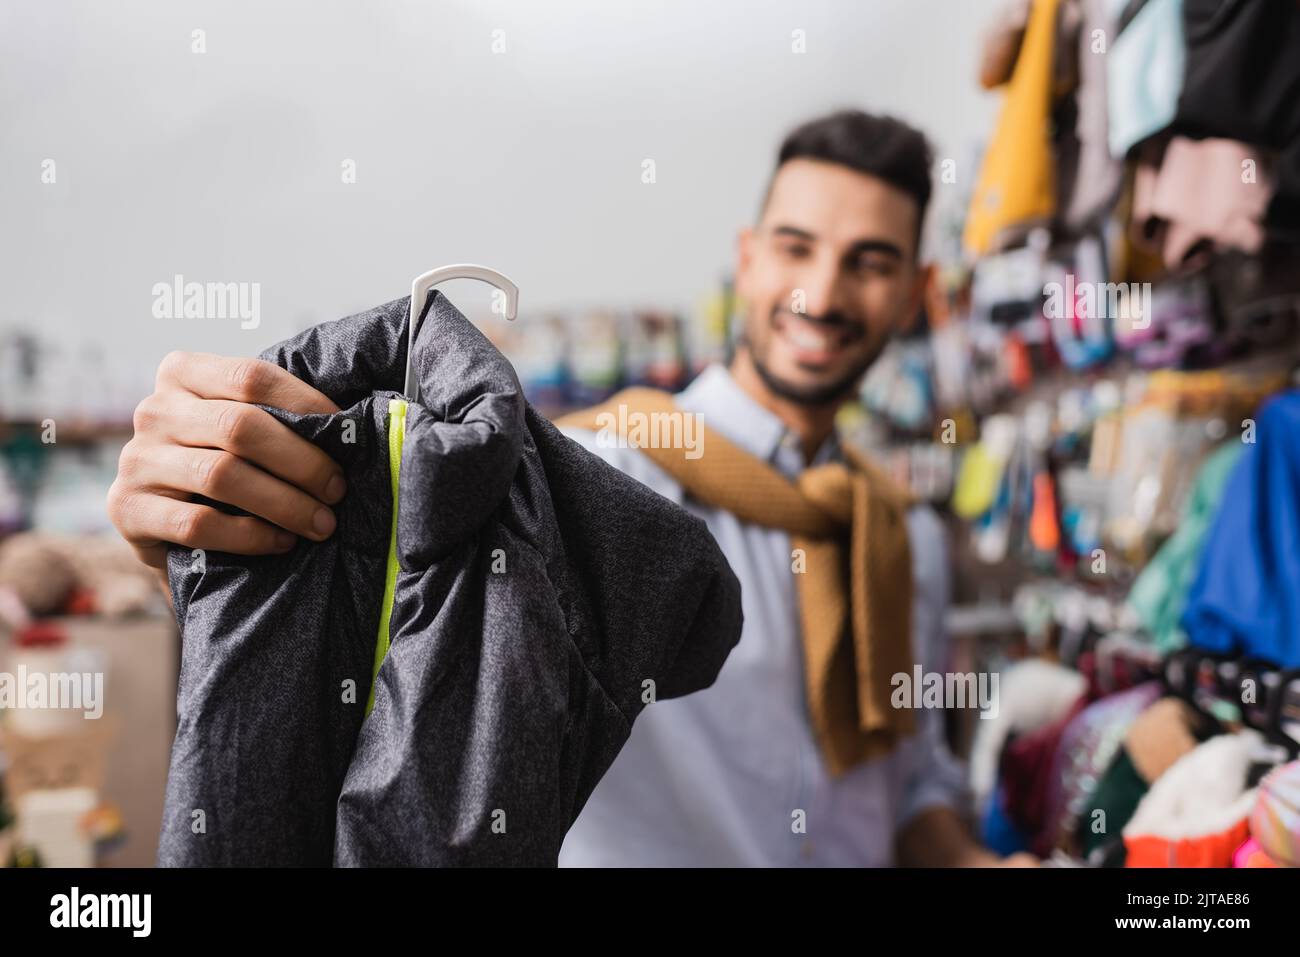 Blurred man choosing animal jacket in pet shop Stock Photo